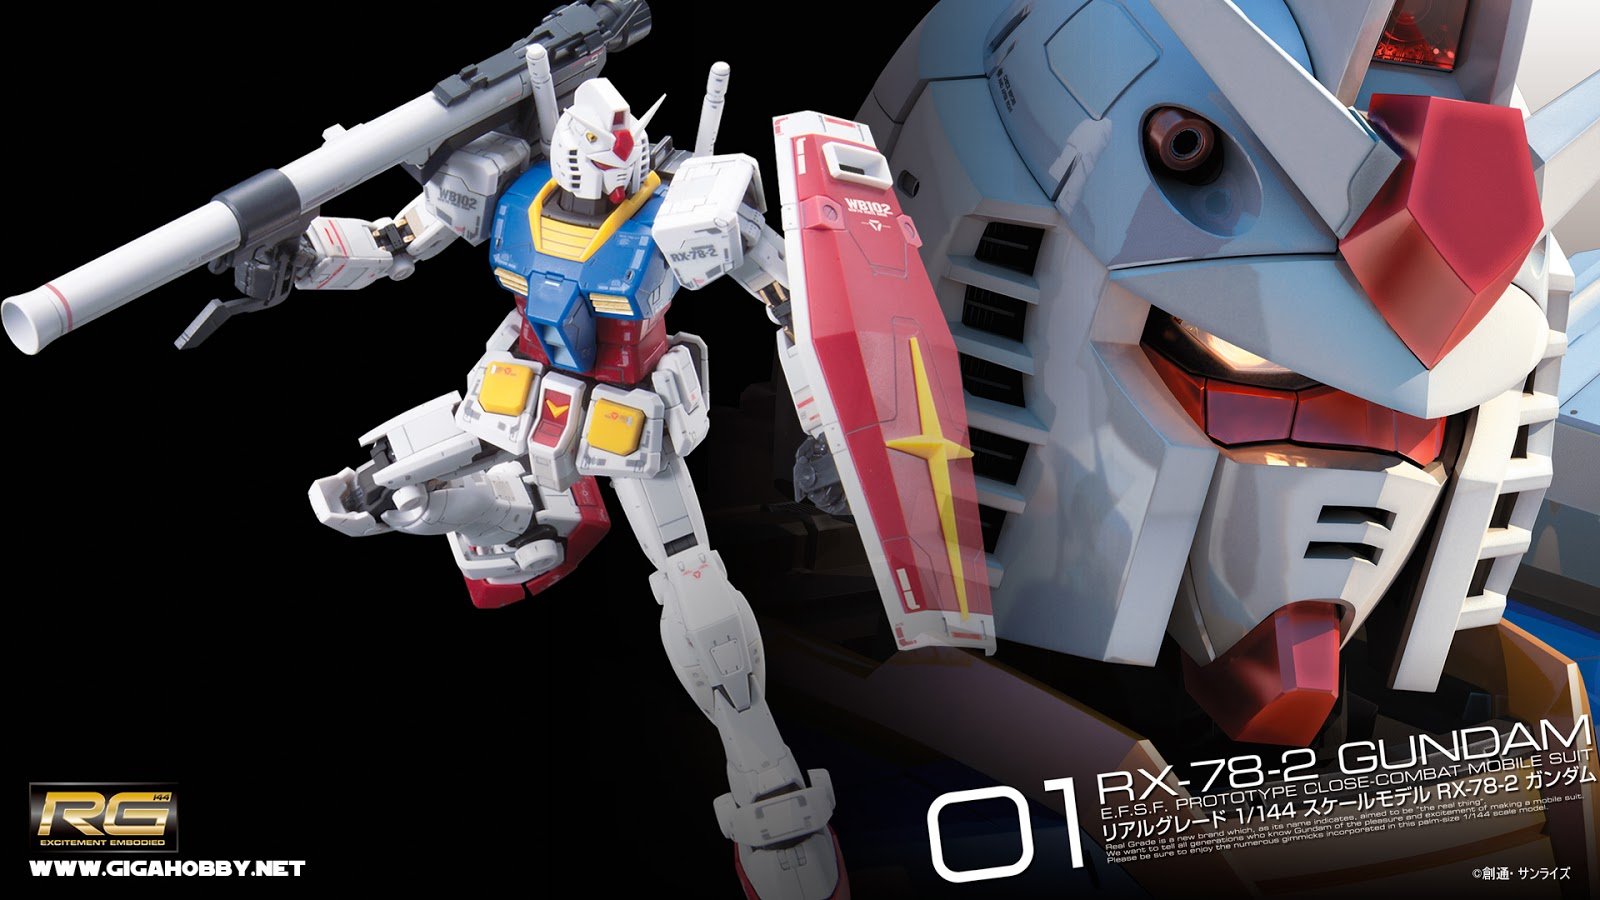 RG 1 144 RX 78 2 Gundam Wallpaper Kits Collection News And Reviews